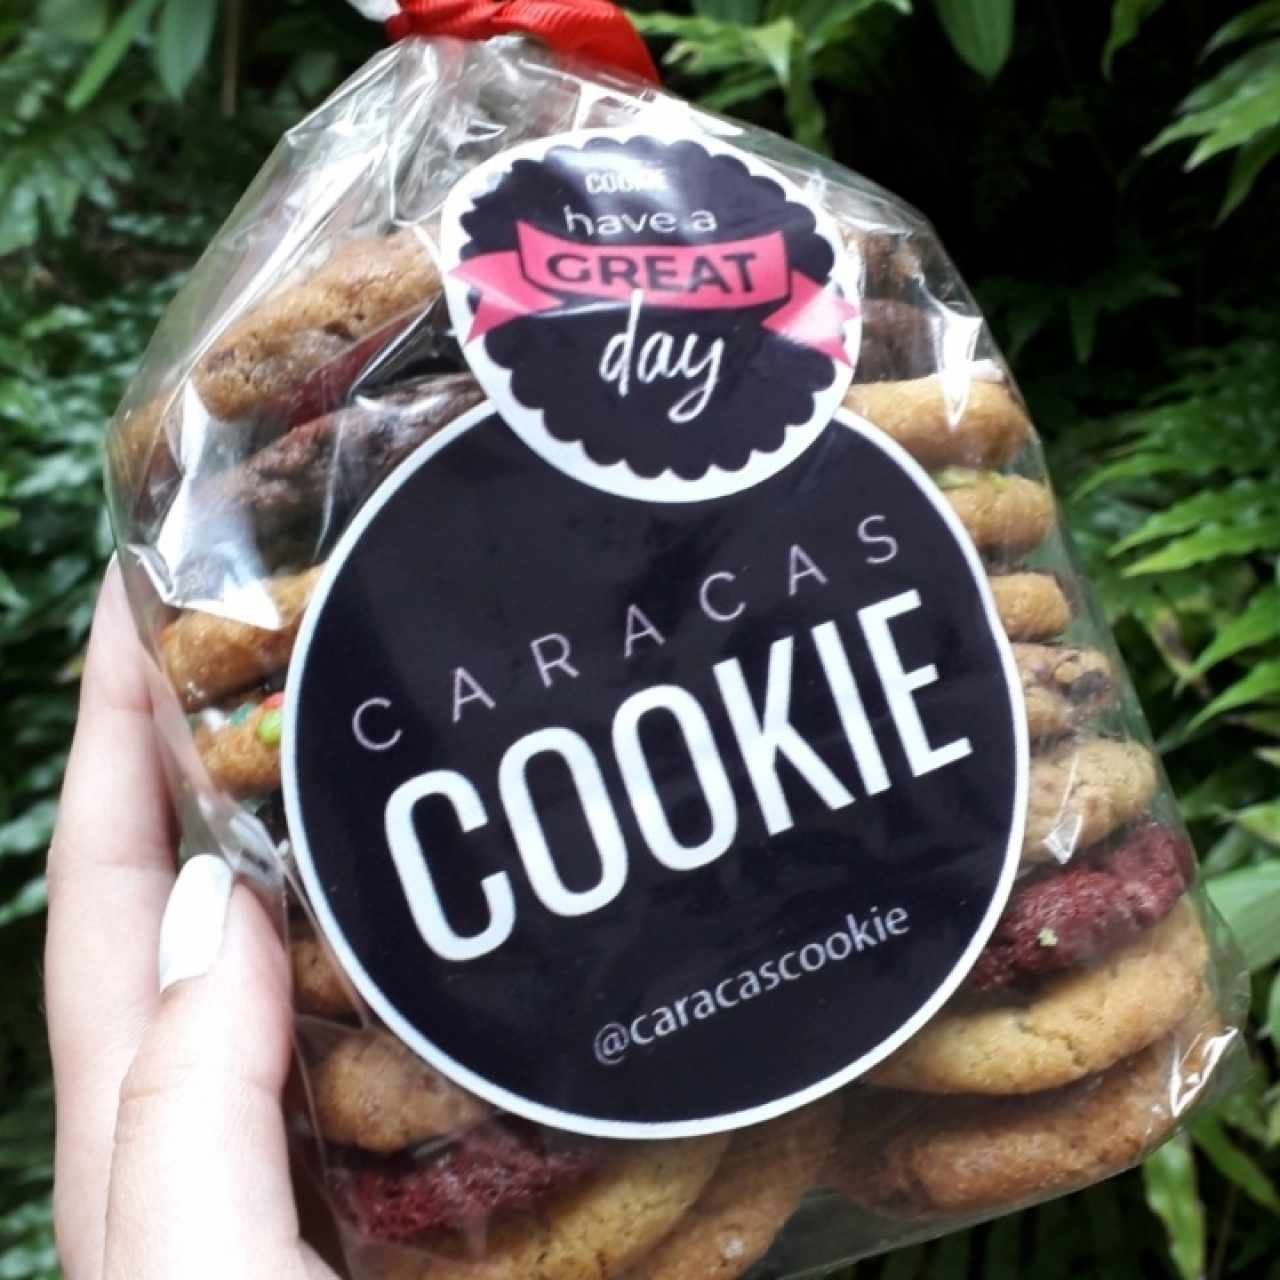 Galleticas Surtidas Caracas Cookie